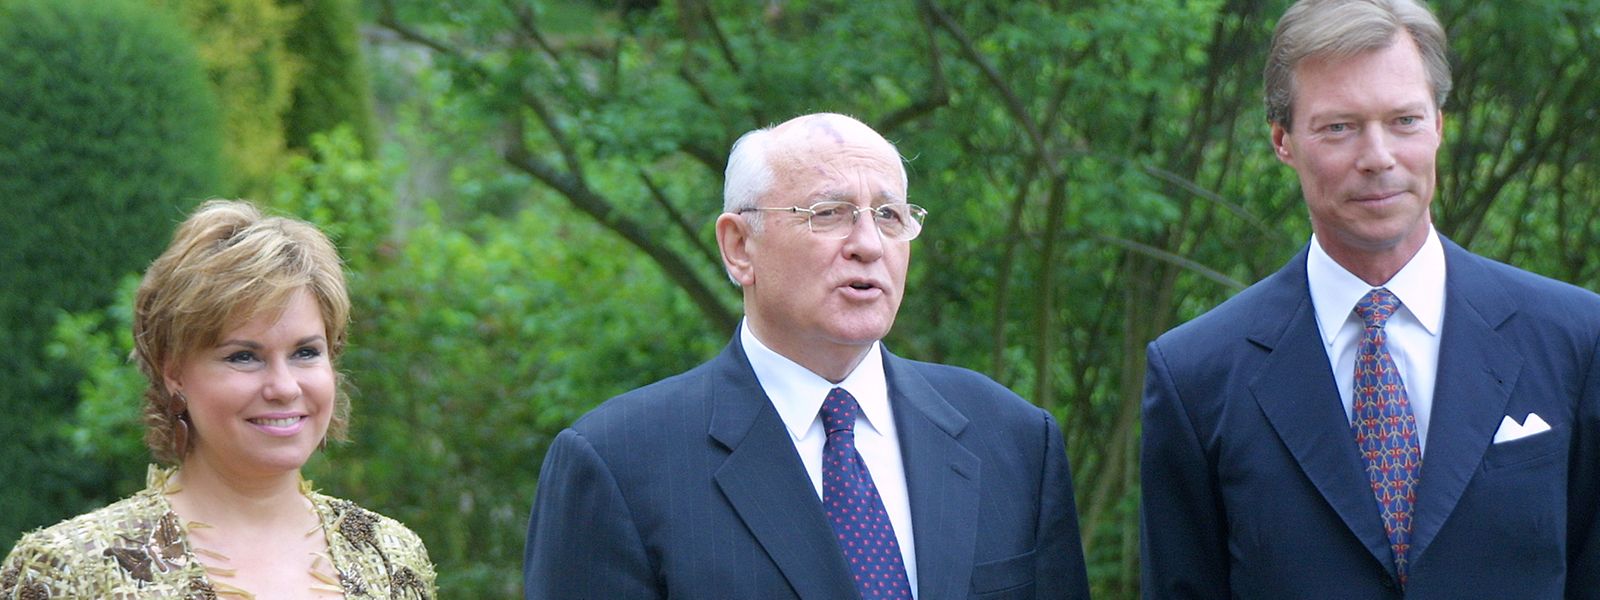 Im Rahmen des Arbeitsbesuchs im Jahr 2004 gewährte das großherzogliche Paar Gorbatschow eine Audienz.